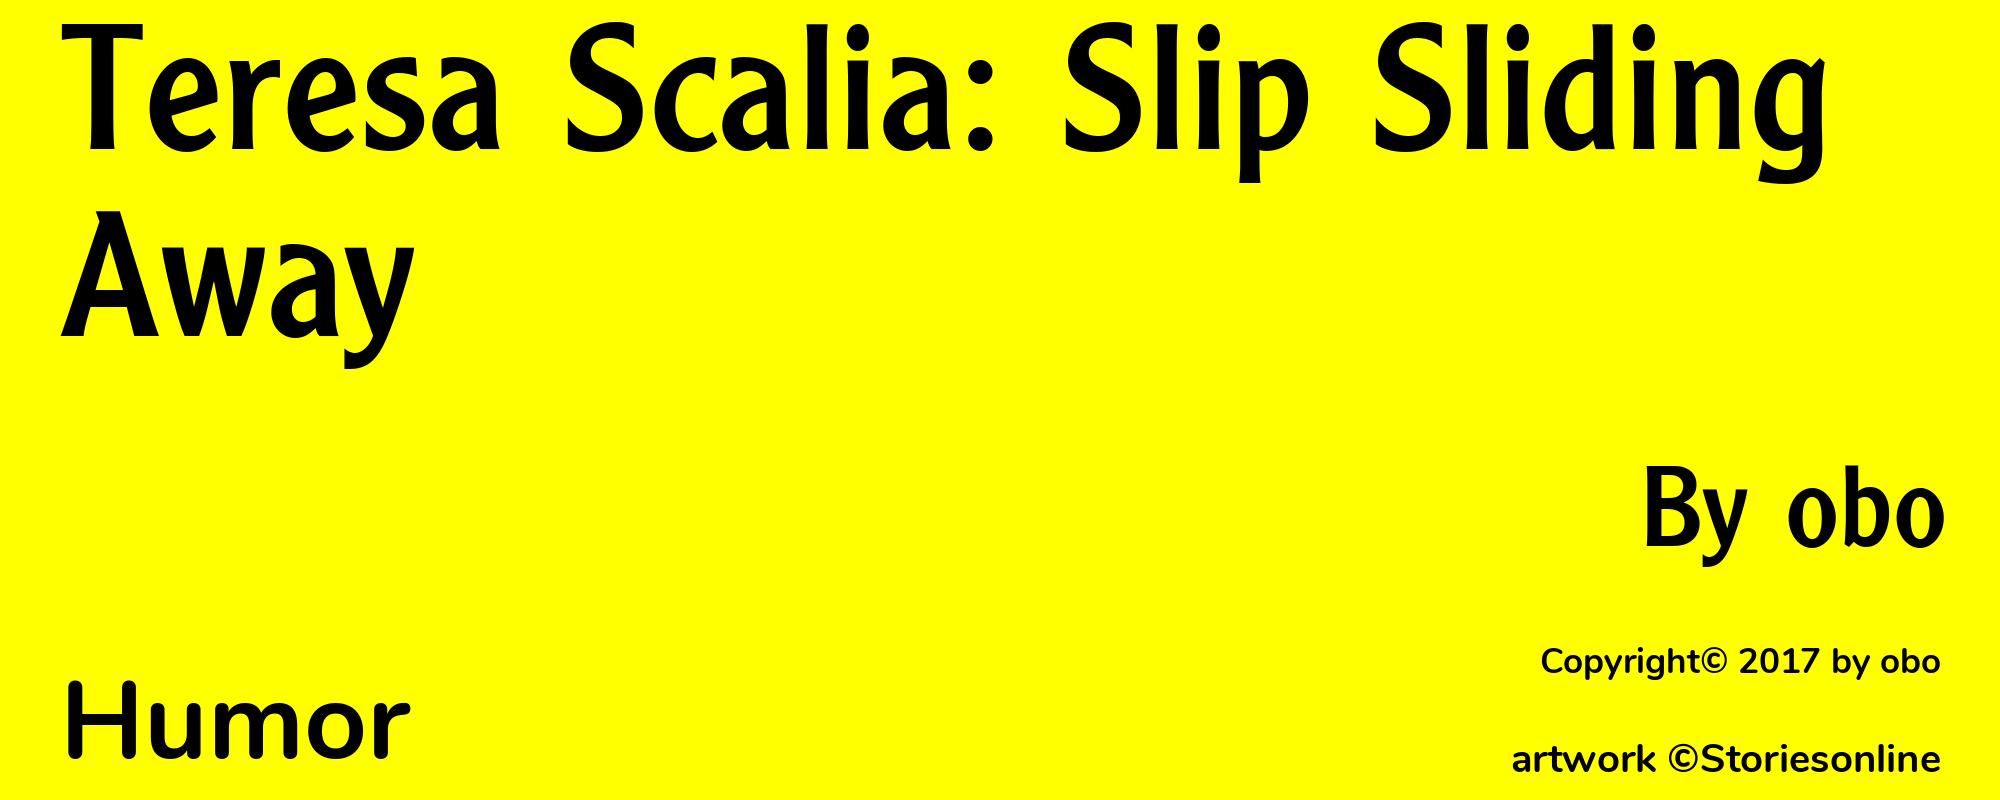 Teresa Scalia: Slip Sliding Away - Cover